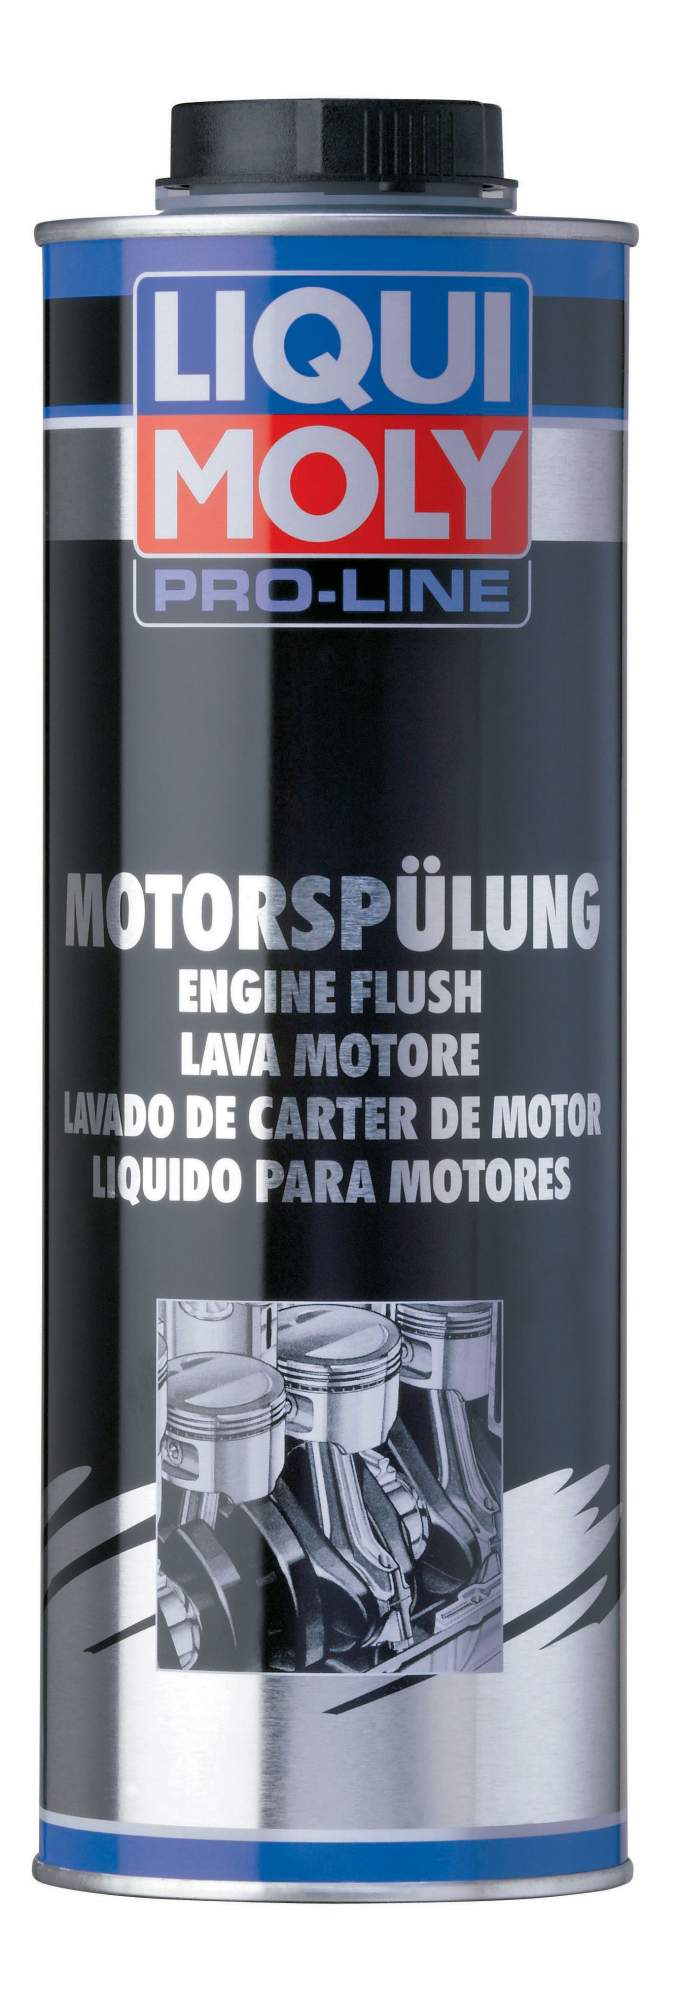 2425 LIQUI MOLY Средство для промывки двигателя Профи Pro-Line Motorspulung (1л)